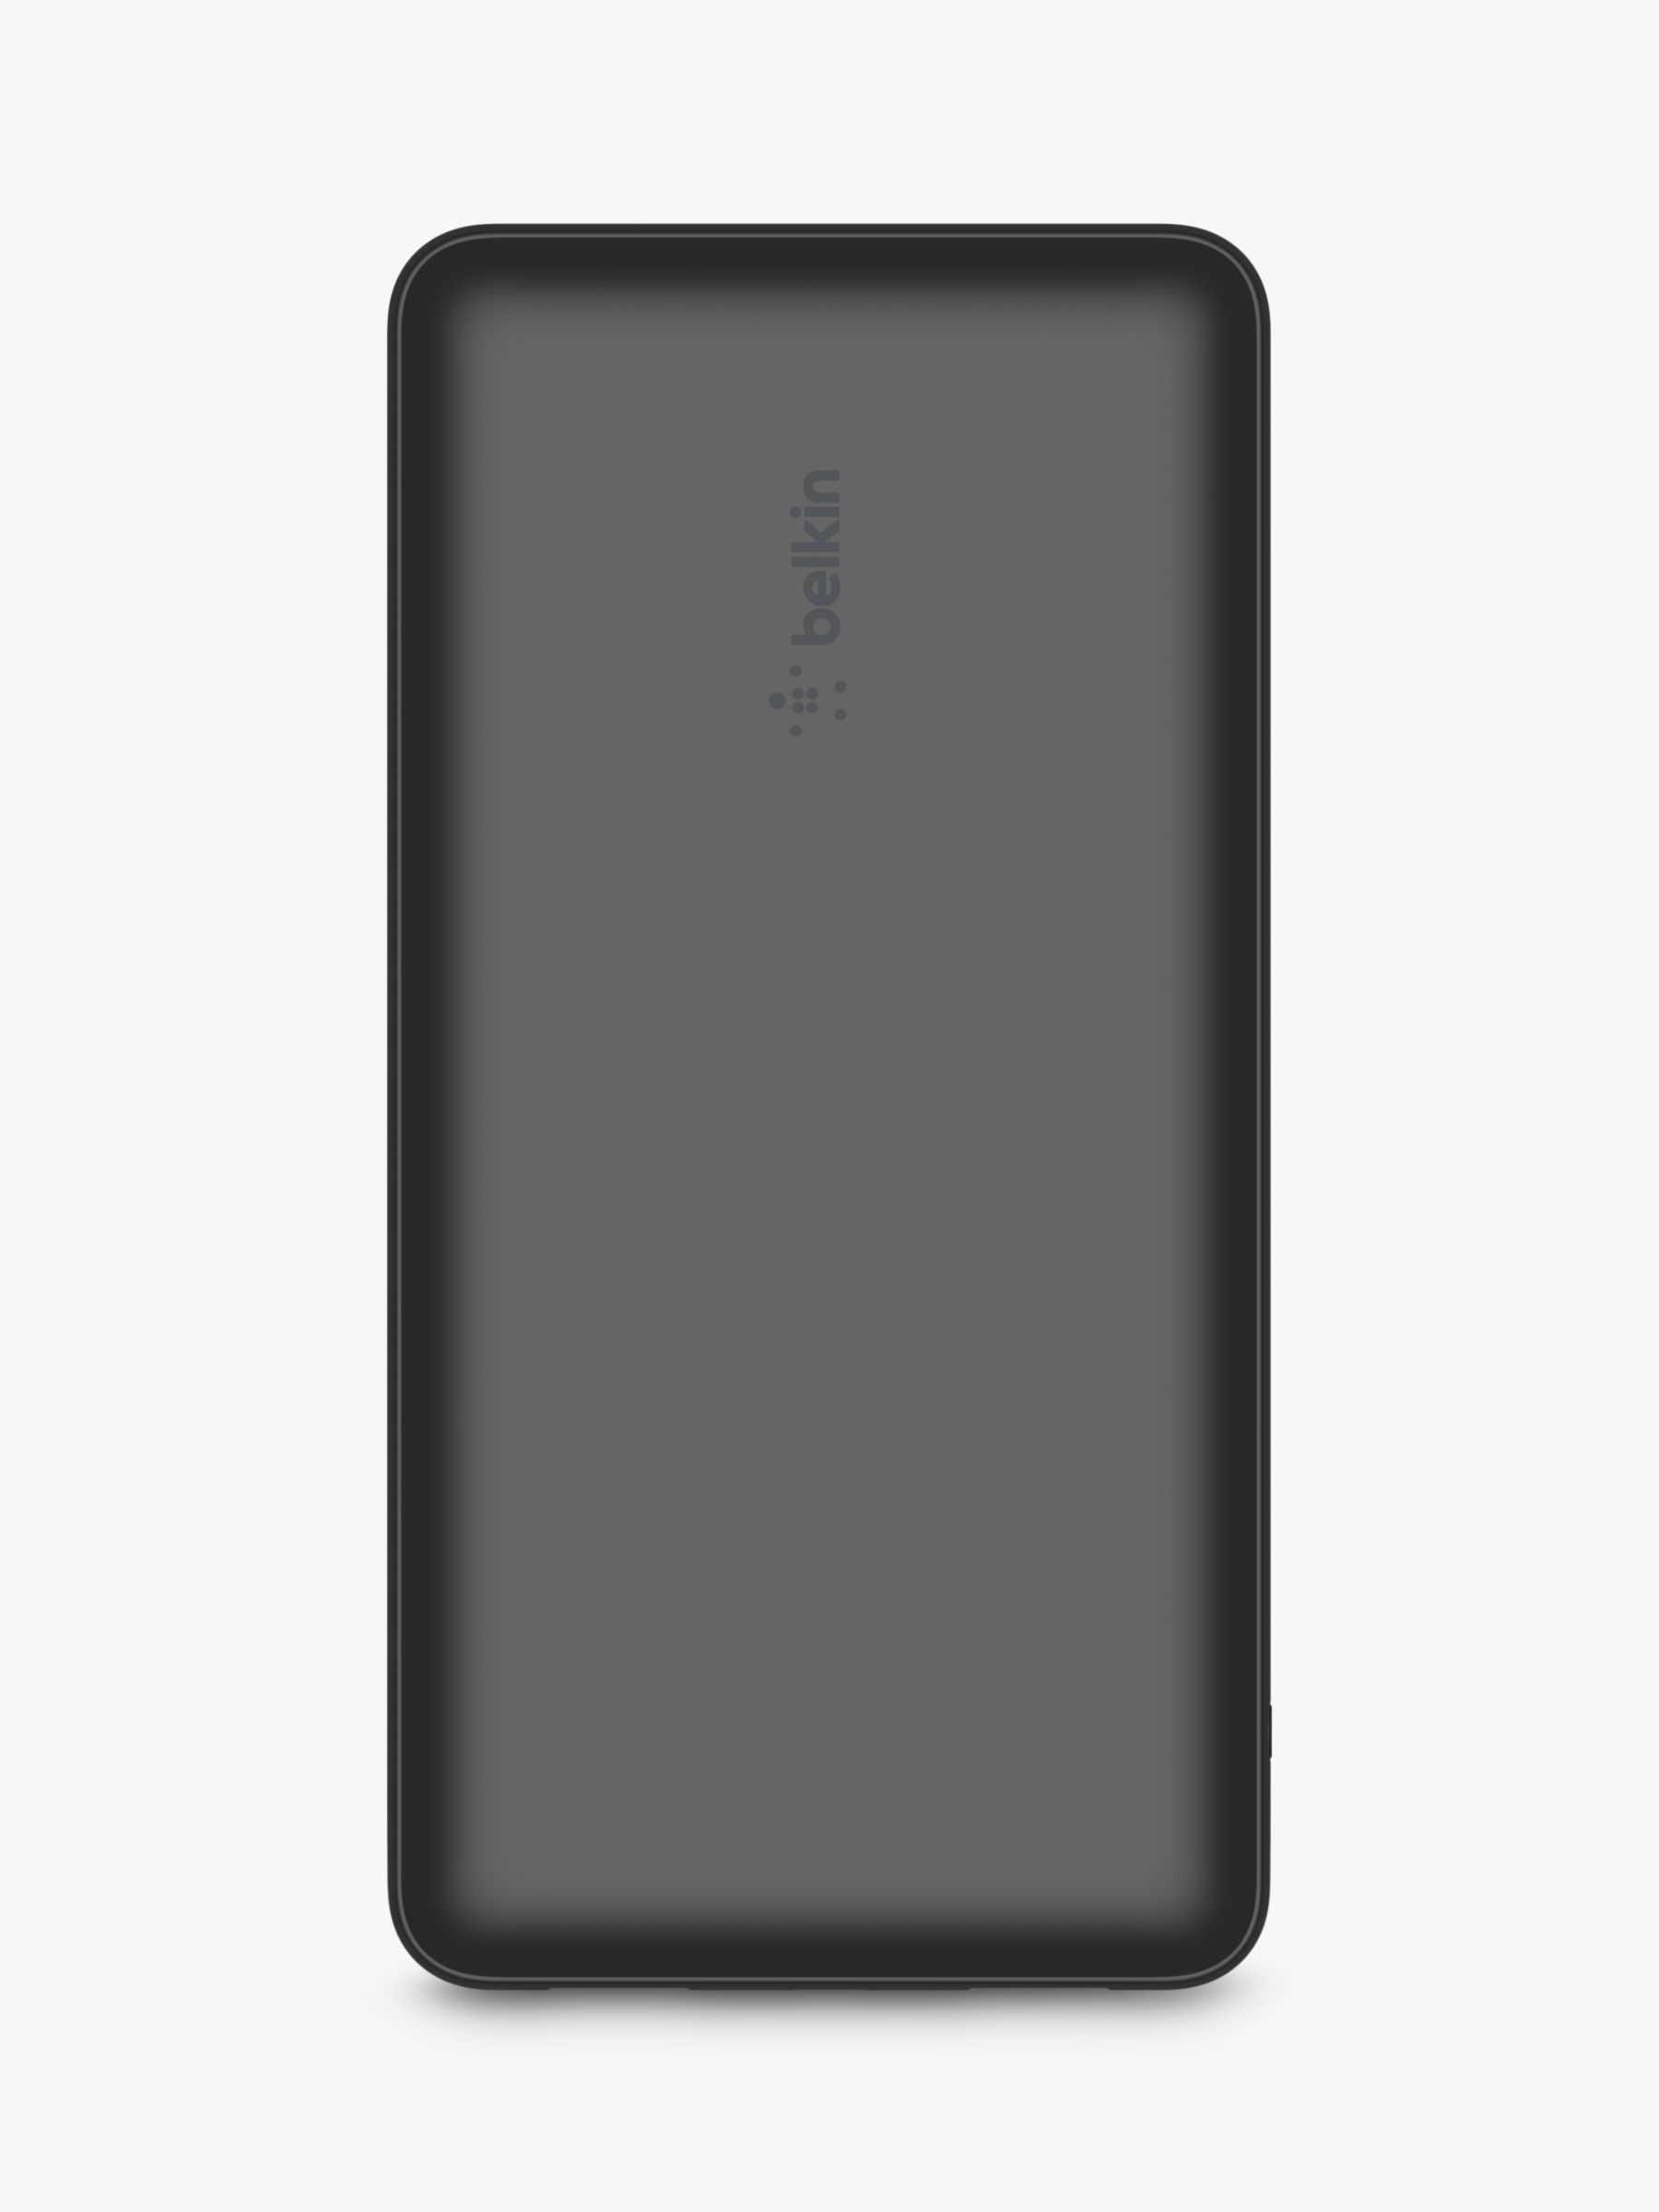 Belkin 20K 3-Port Portable Power Bank, Black